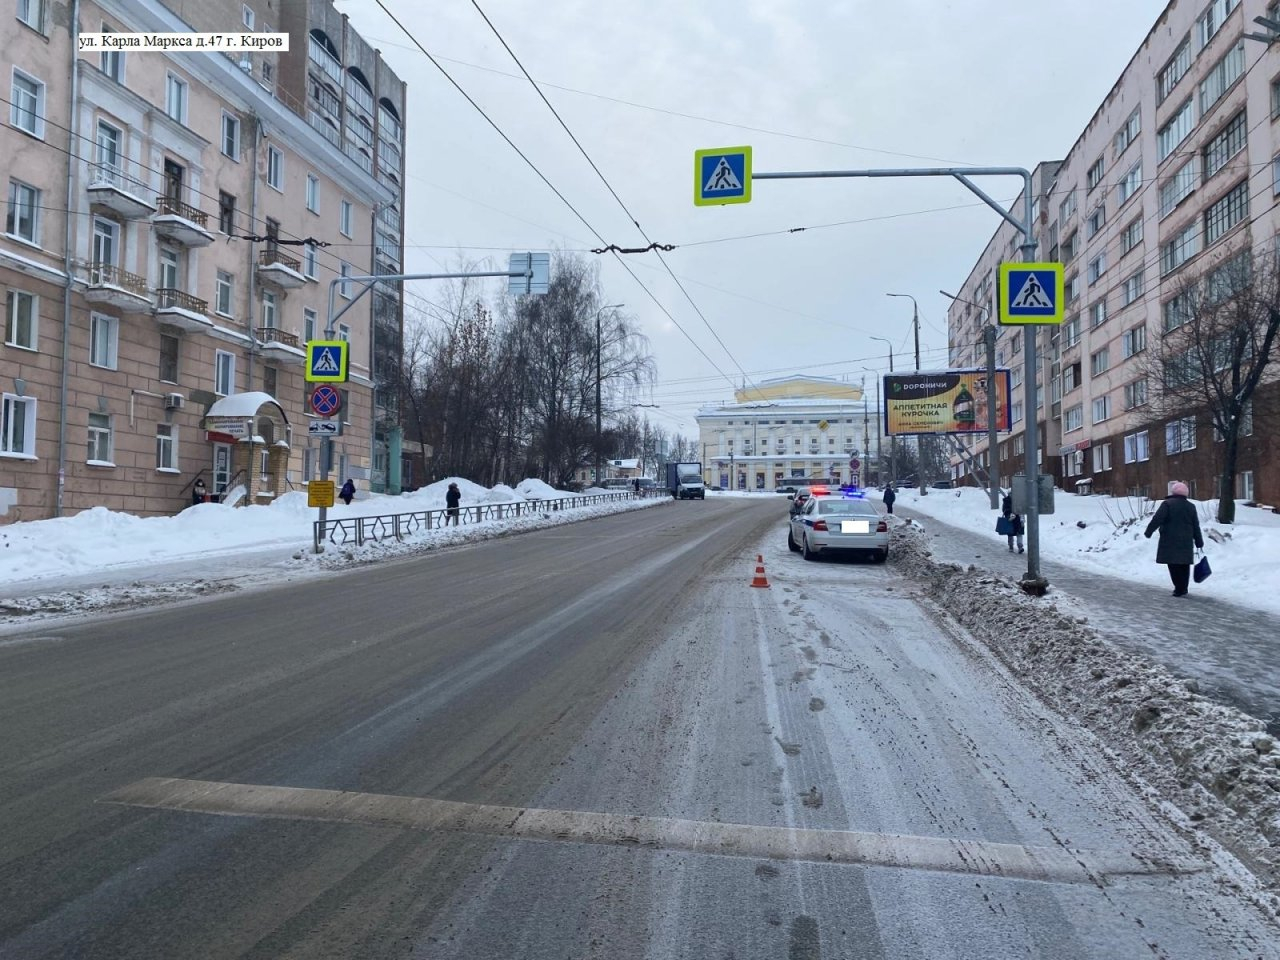 В Кирове на Карла Маркса молодой водитель на иномарке сбил 8-летнюю девочку